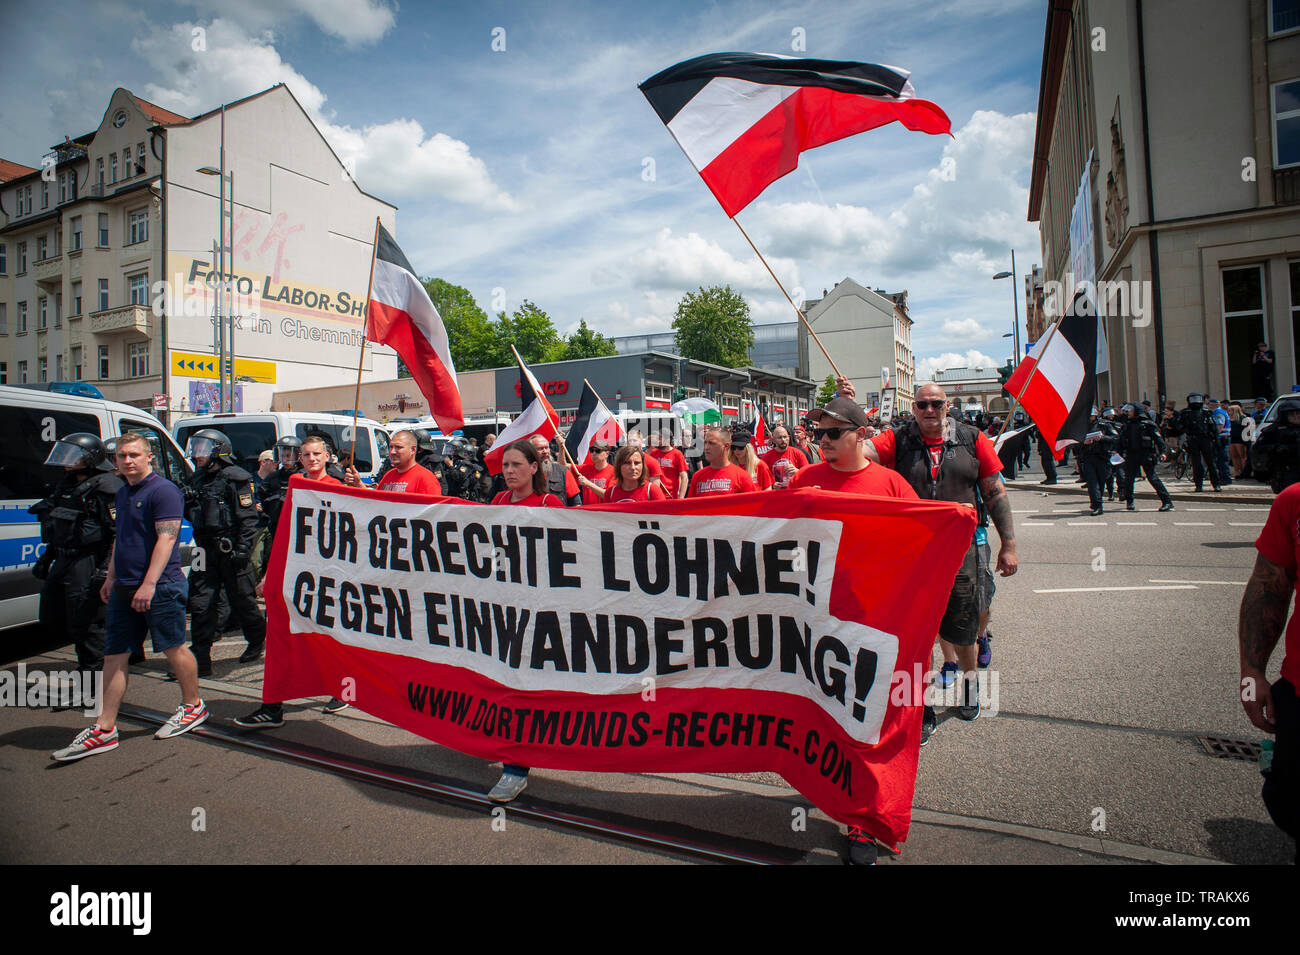 'Tag Der Deutschen Zukunft'- Day of German Future. Far right march in Chemnitz on June 1st. Stock Photo